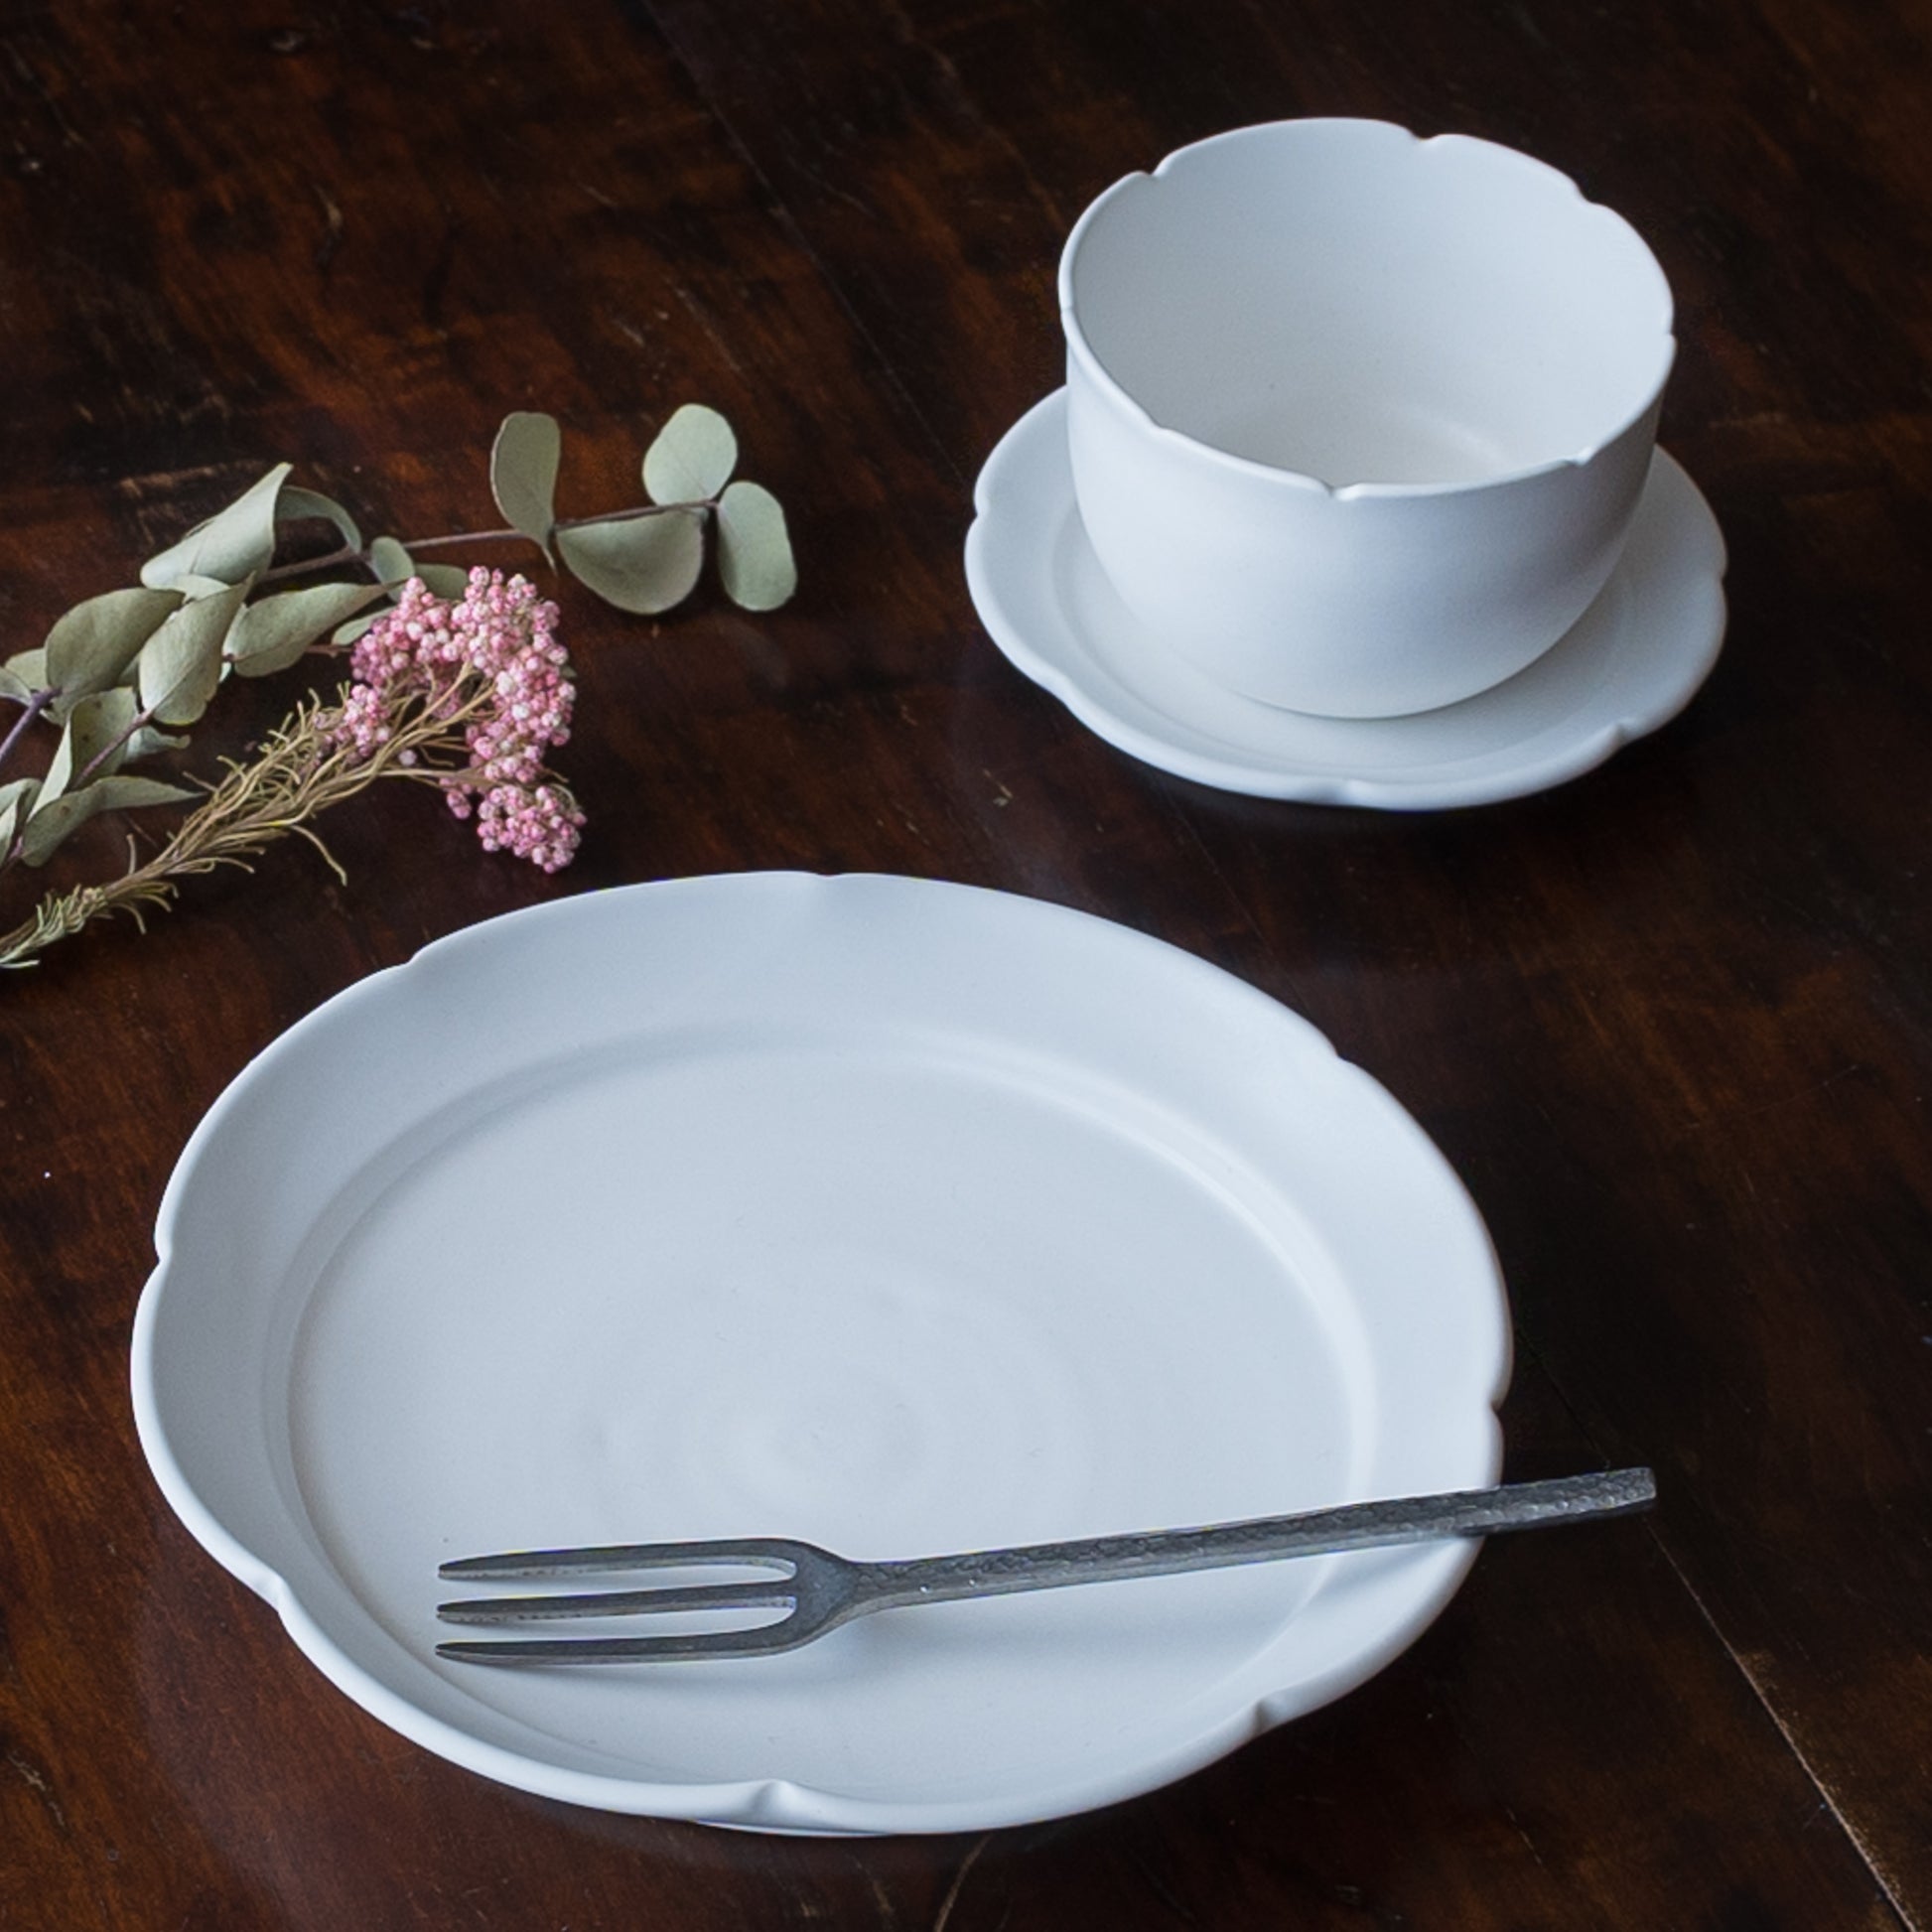 おやつタイムが優雅に過ごせる藤村佳澄さんの花型豆皿